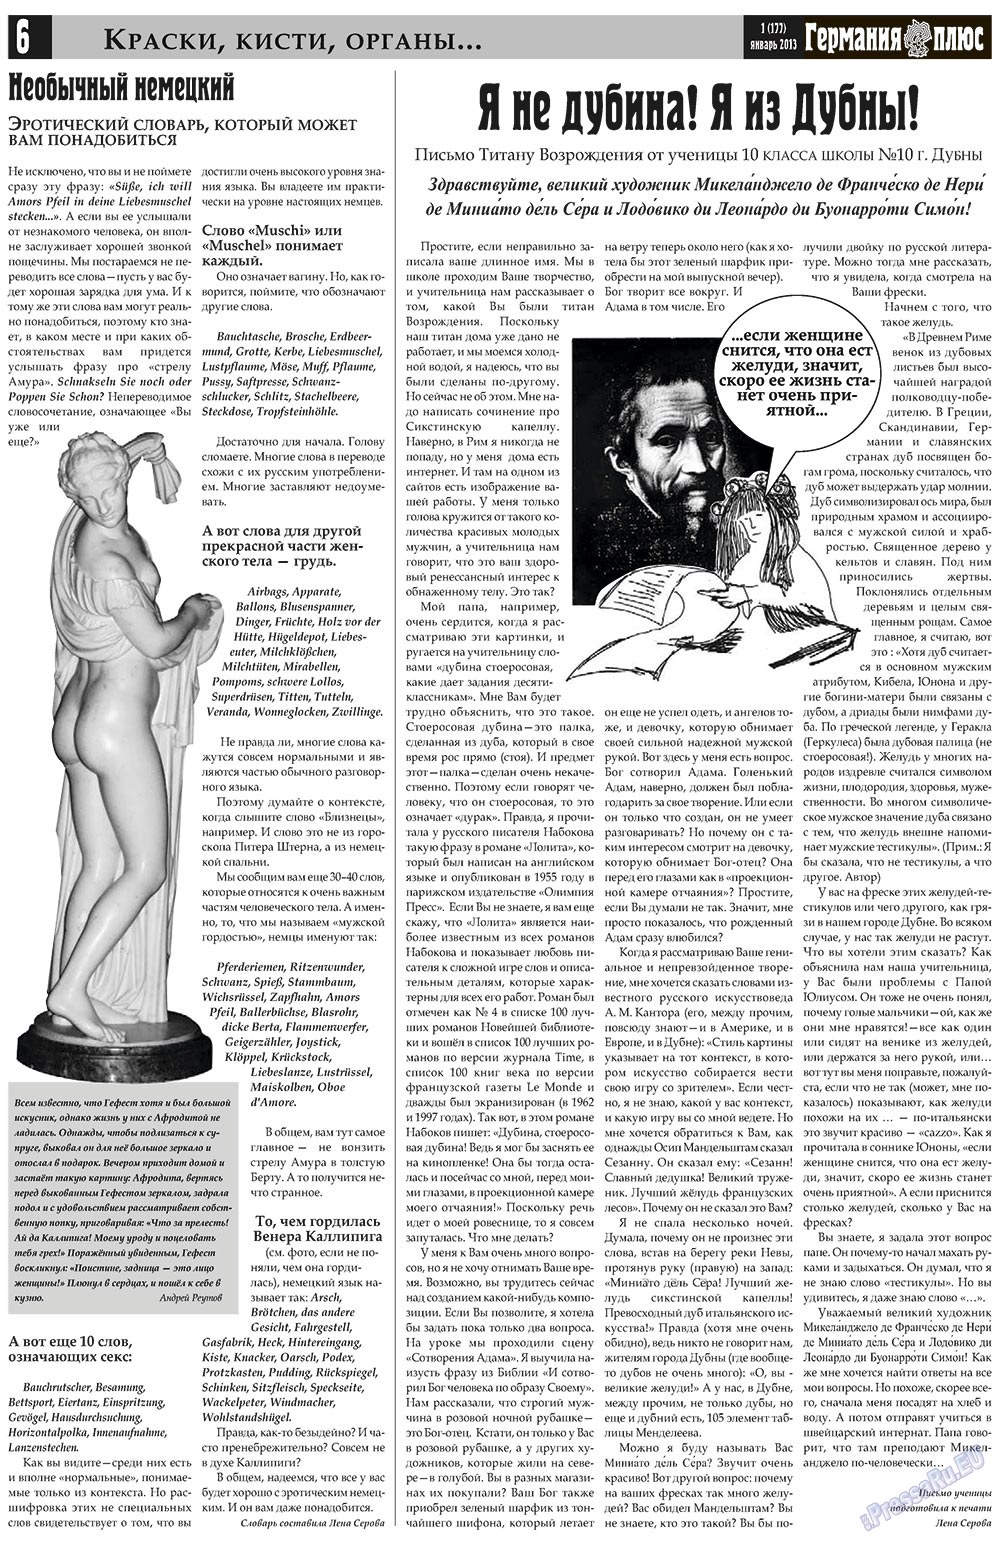 Германия плюс, газета. 2013 №1 стр.6